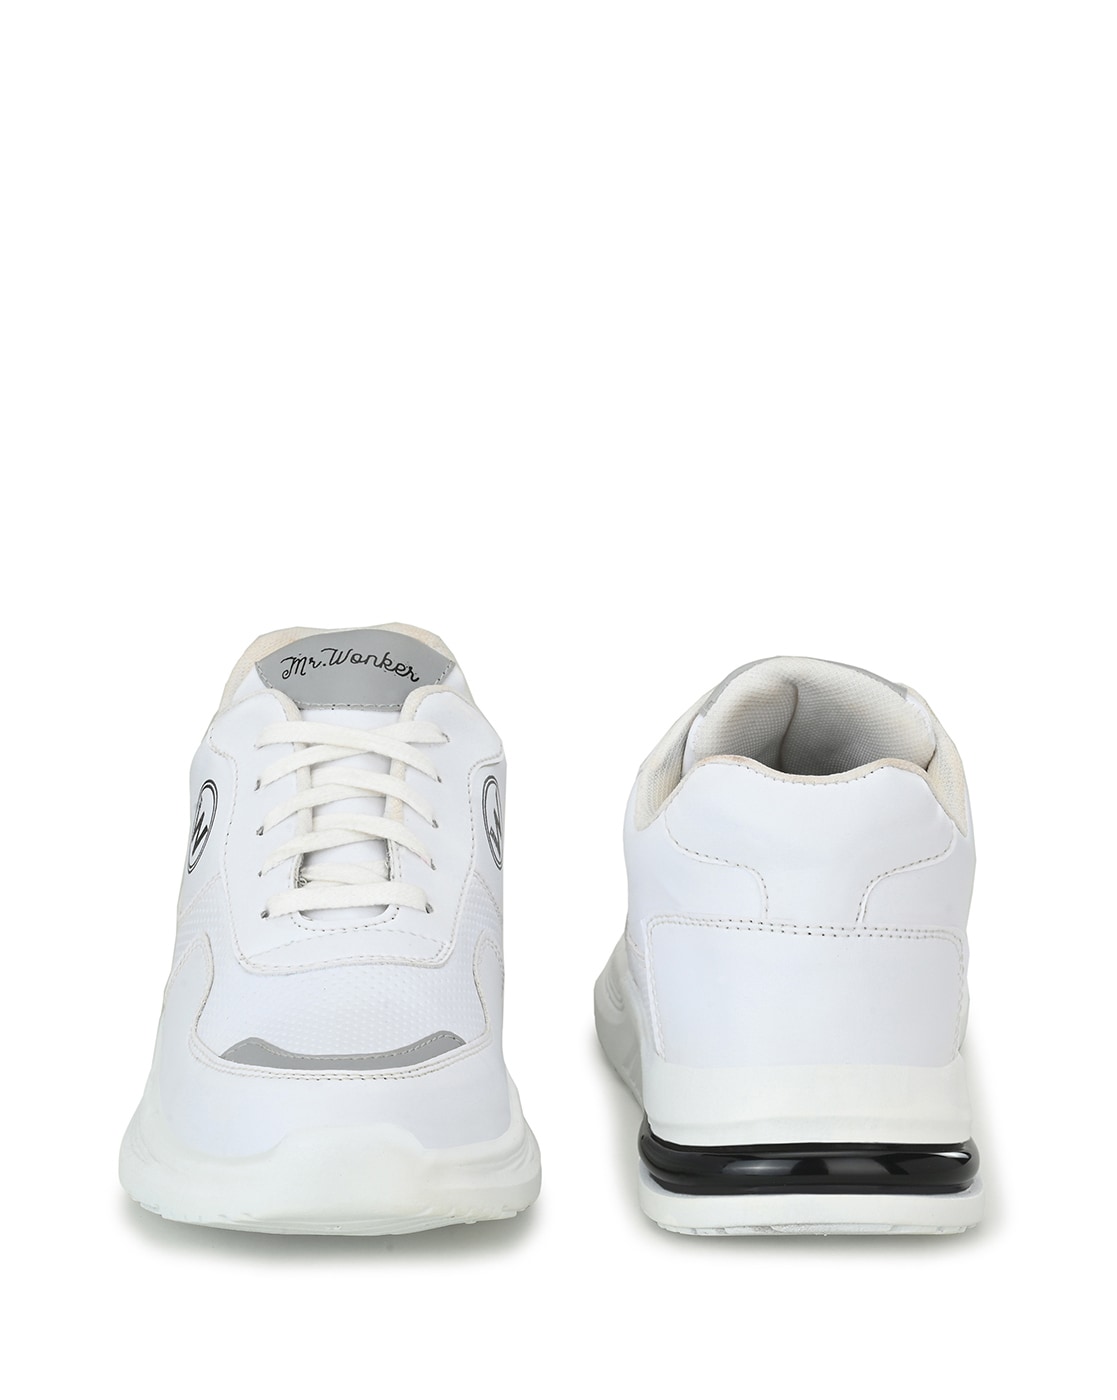 Footwear | heavy soal shoes 10 number | Freeup